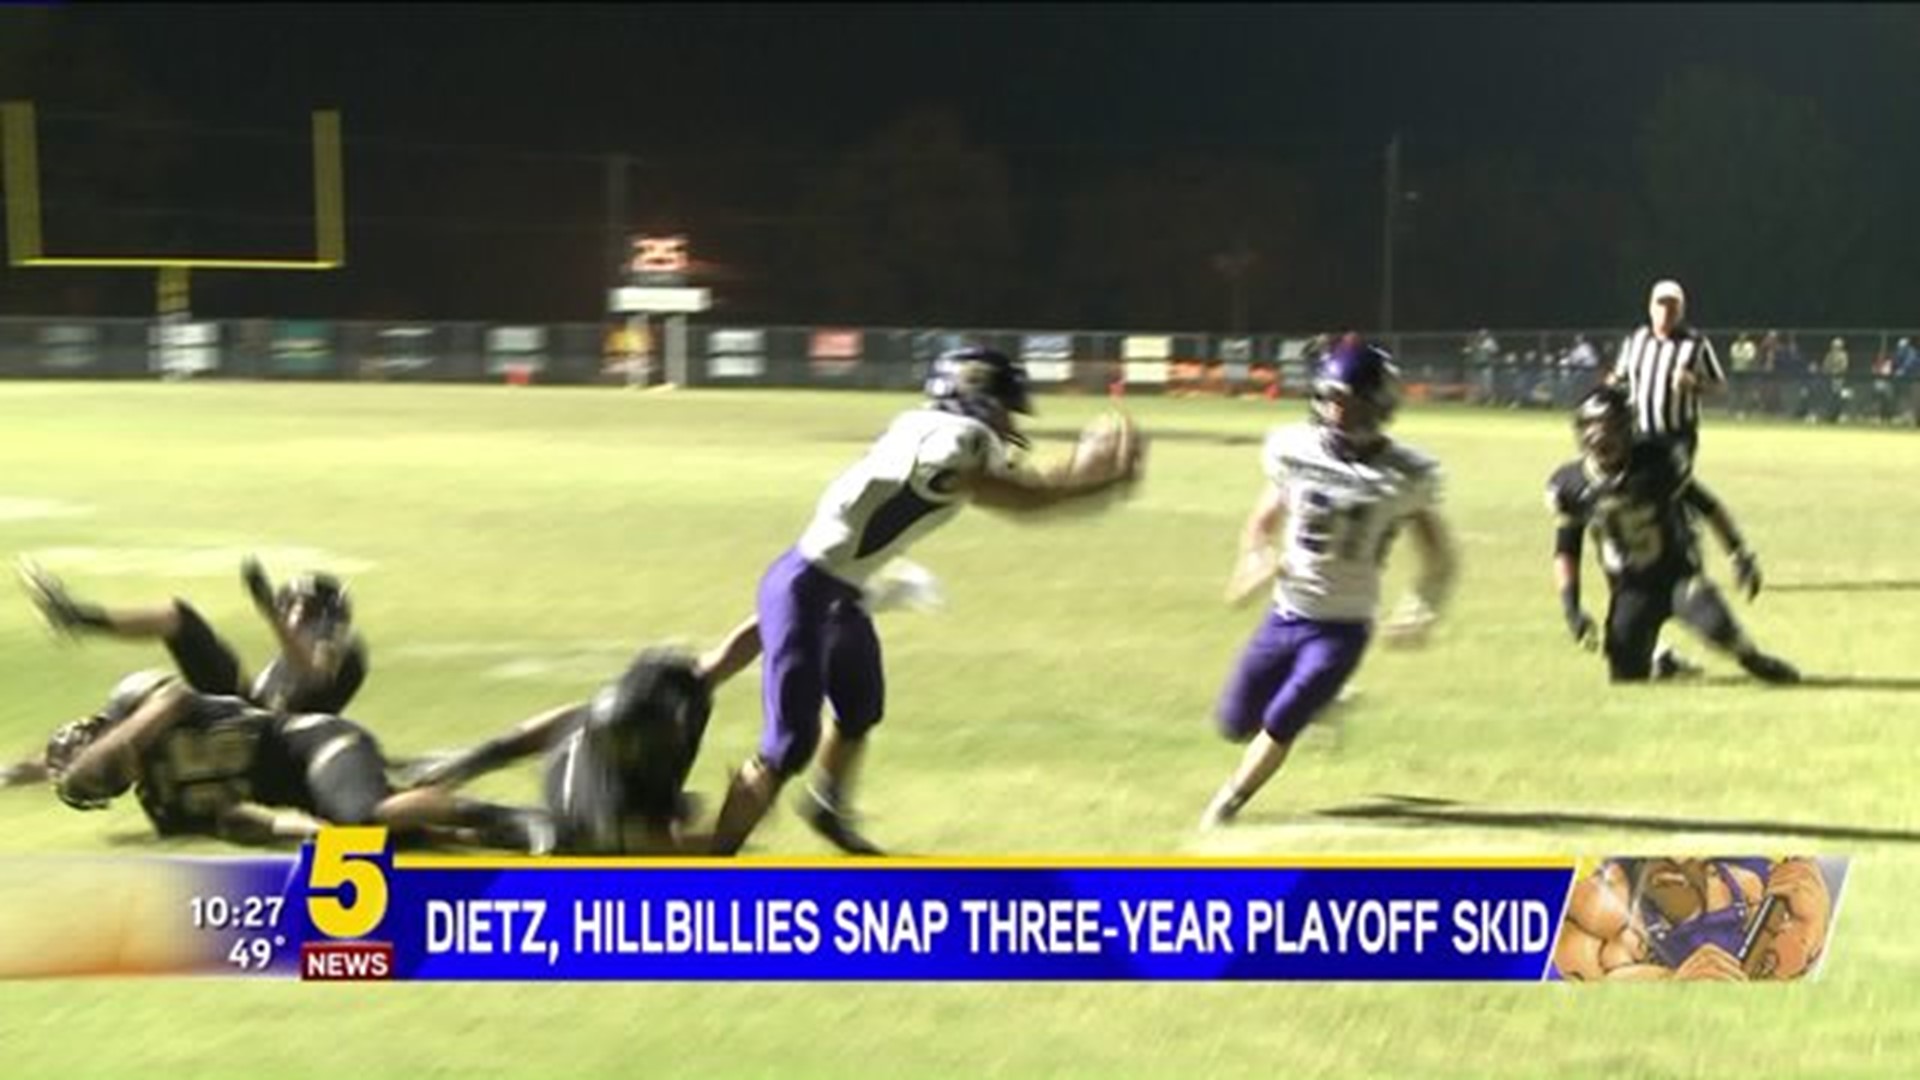 Dietz, Hillbillies Snap Three-Year Playoff Skid